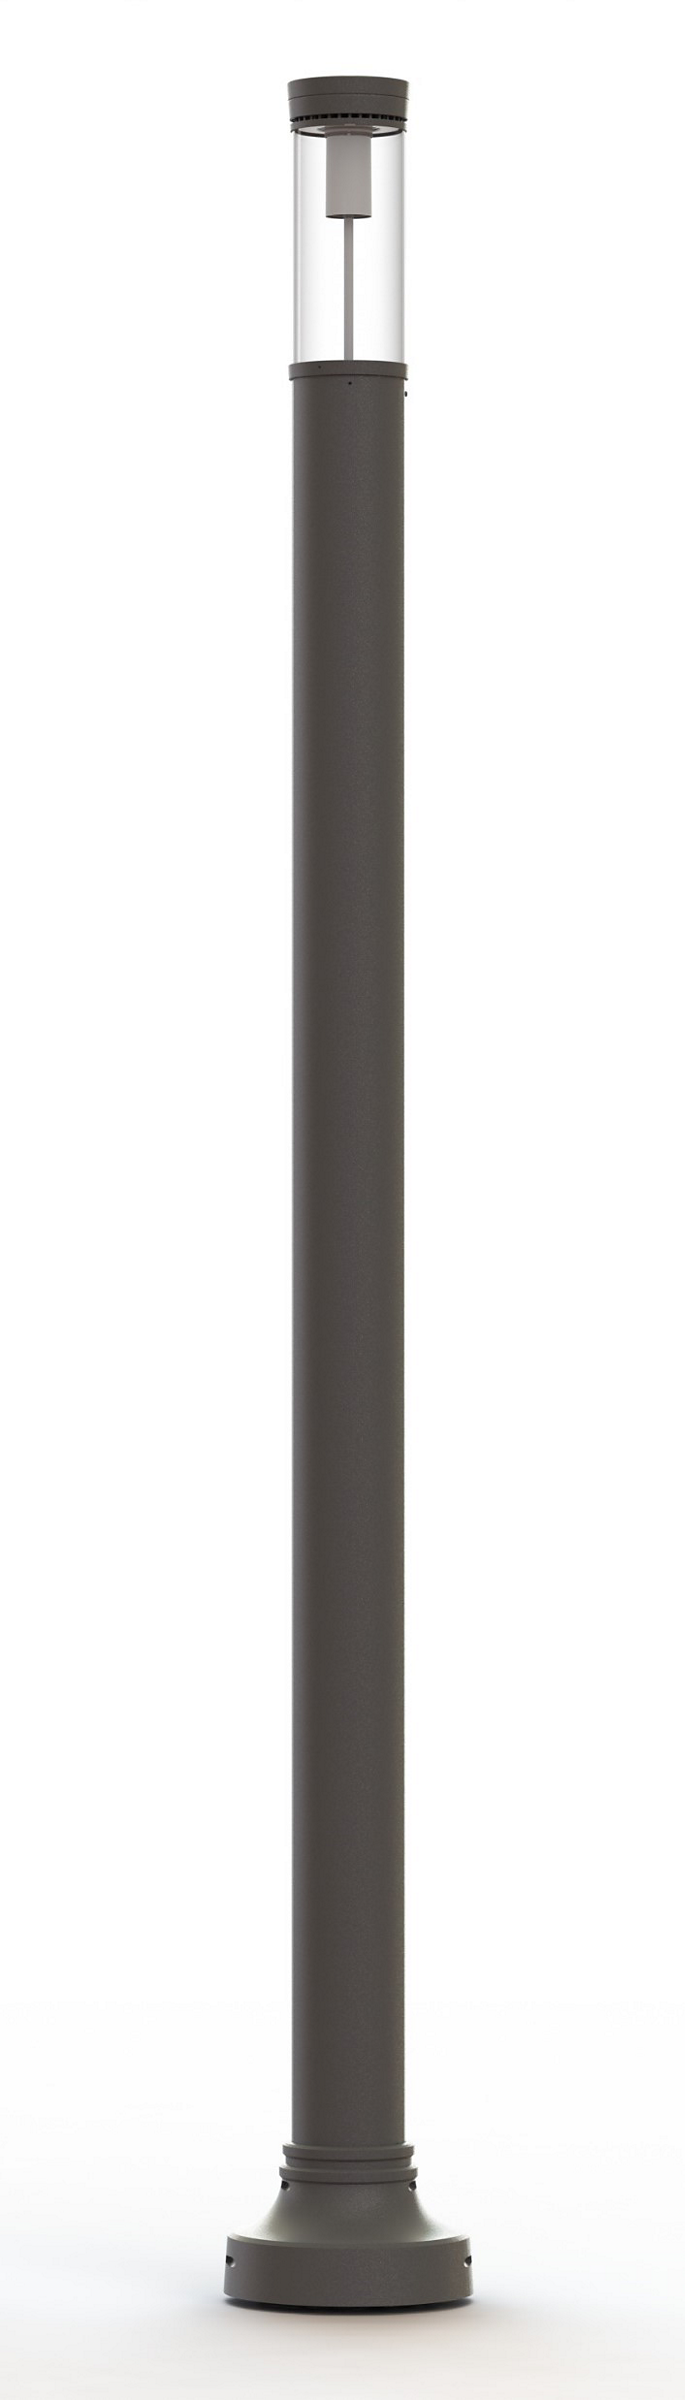 SleekVision Light Column LED (VCC10)